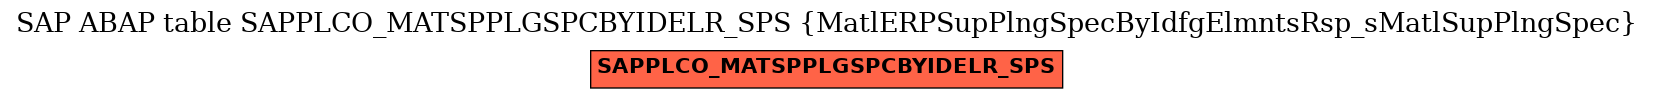 E-R Diagram for table SAPPLCO_MATSPPLGSPCBYIDELR_SPS (MatlERPSupPlngSpecByIdfgElmntsRsp_sMatlSupPlngSpec)